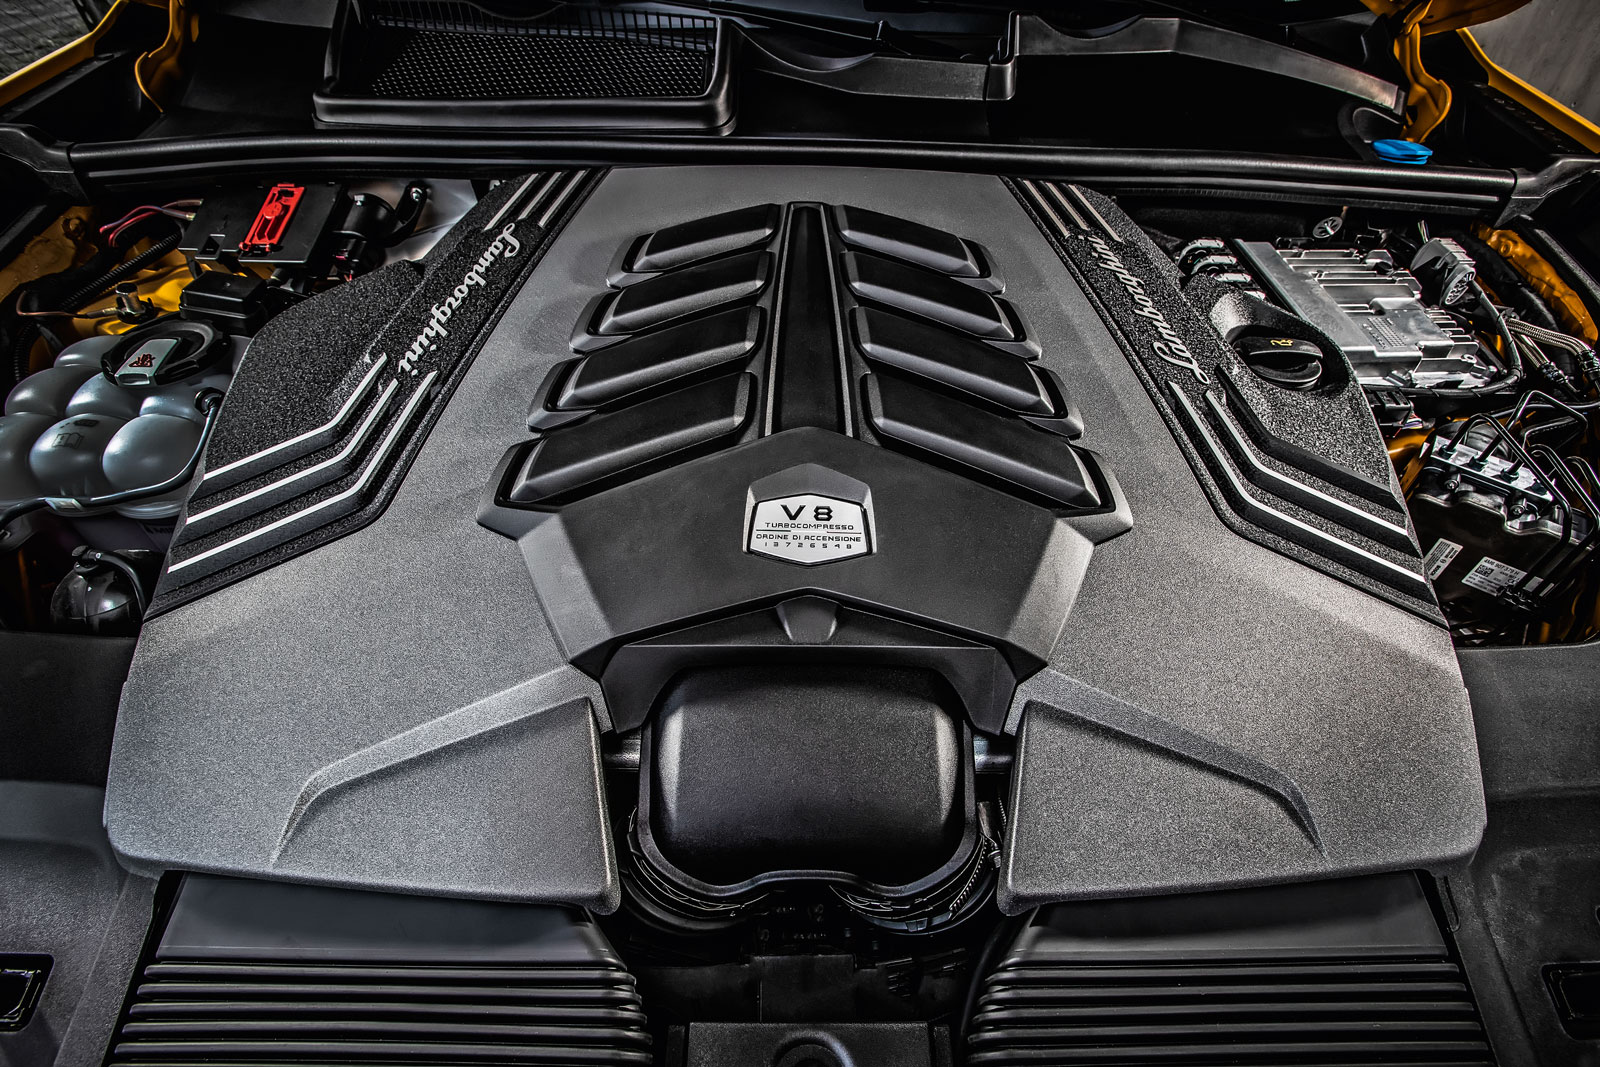 Impressões ao dirigir: Urus, o primeiro SUV da Lamborghini | Quatro Rodas